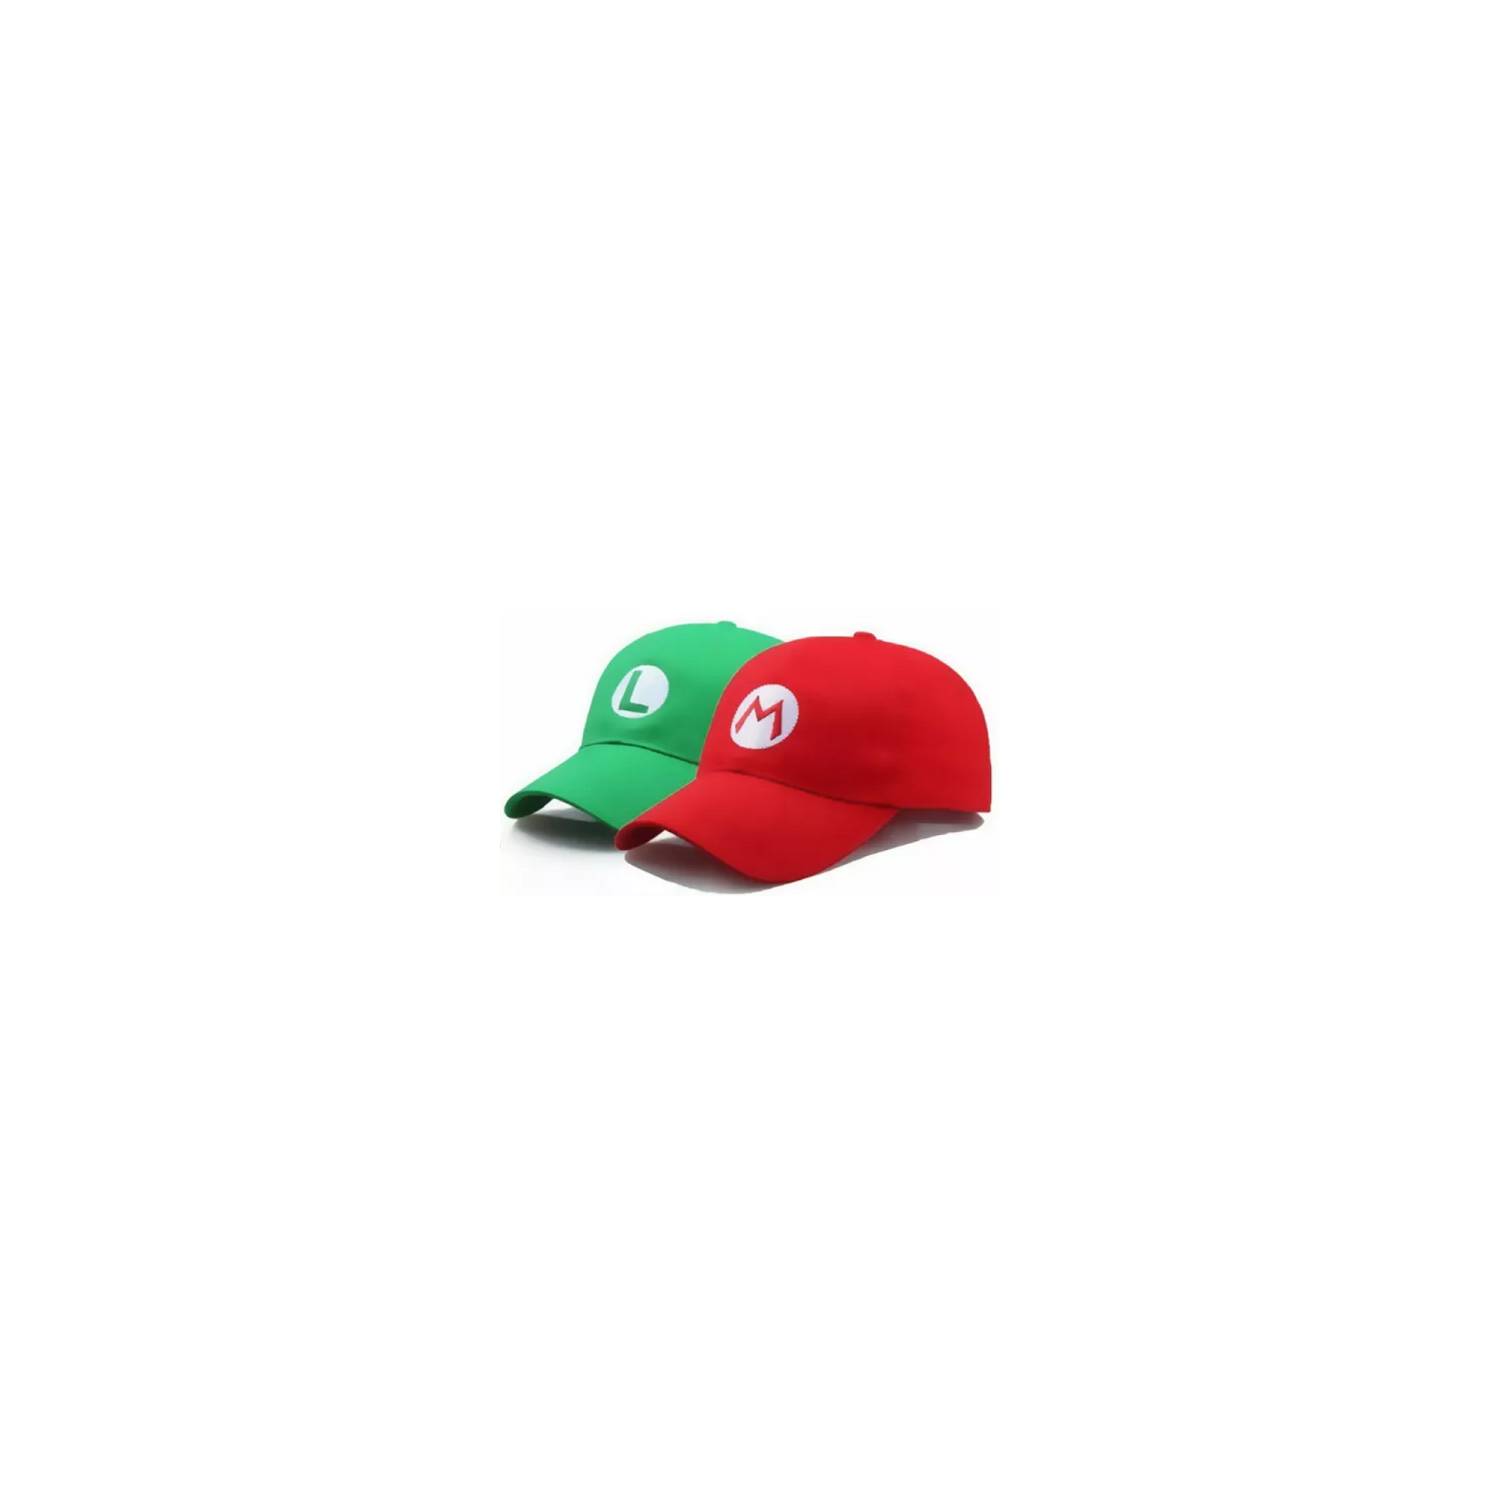 Gorros Mario y Luigi (Mario bros) x1 - El Cotillonero